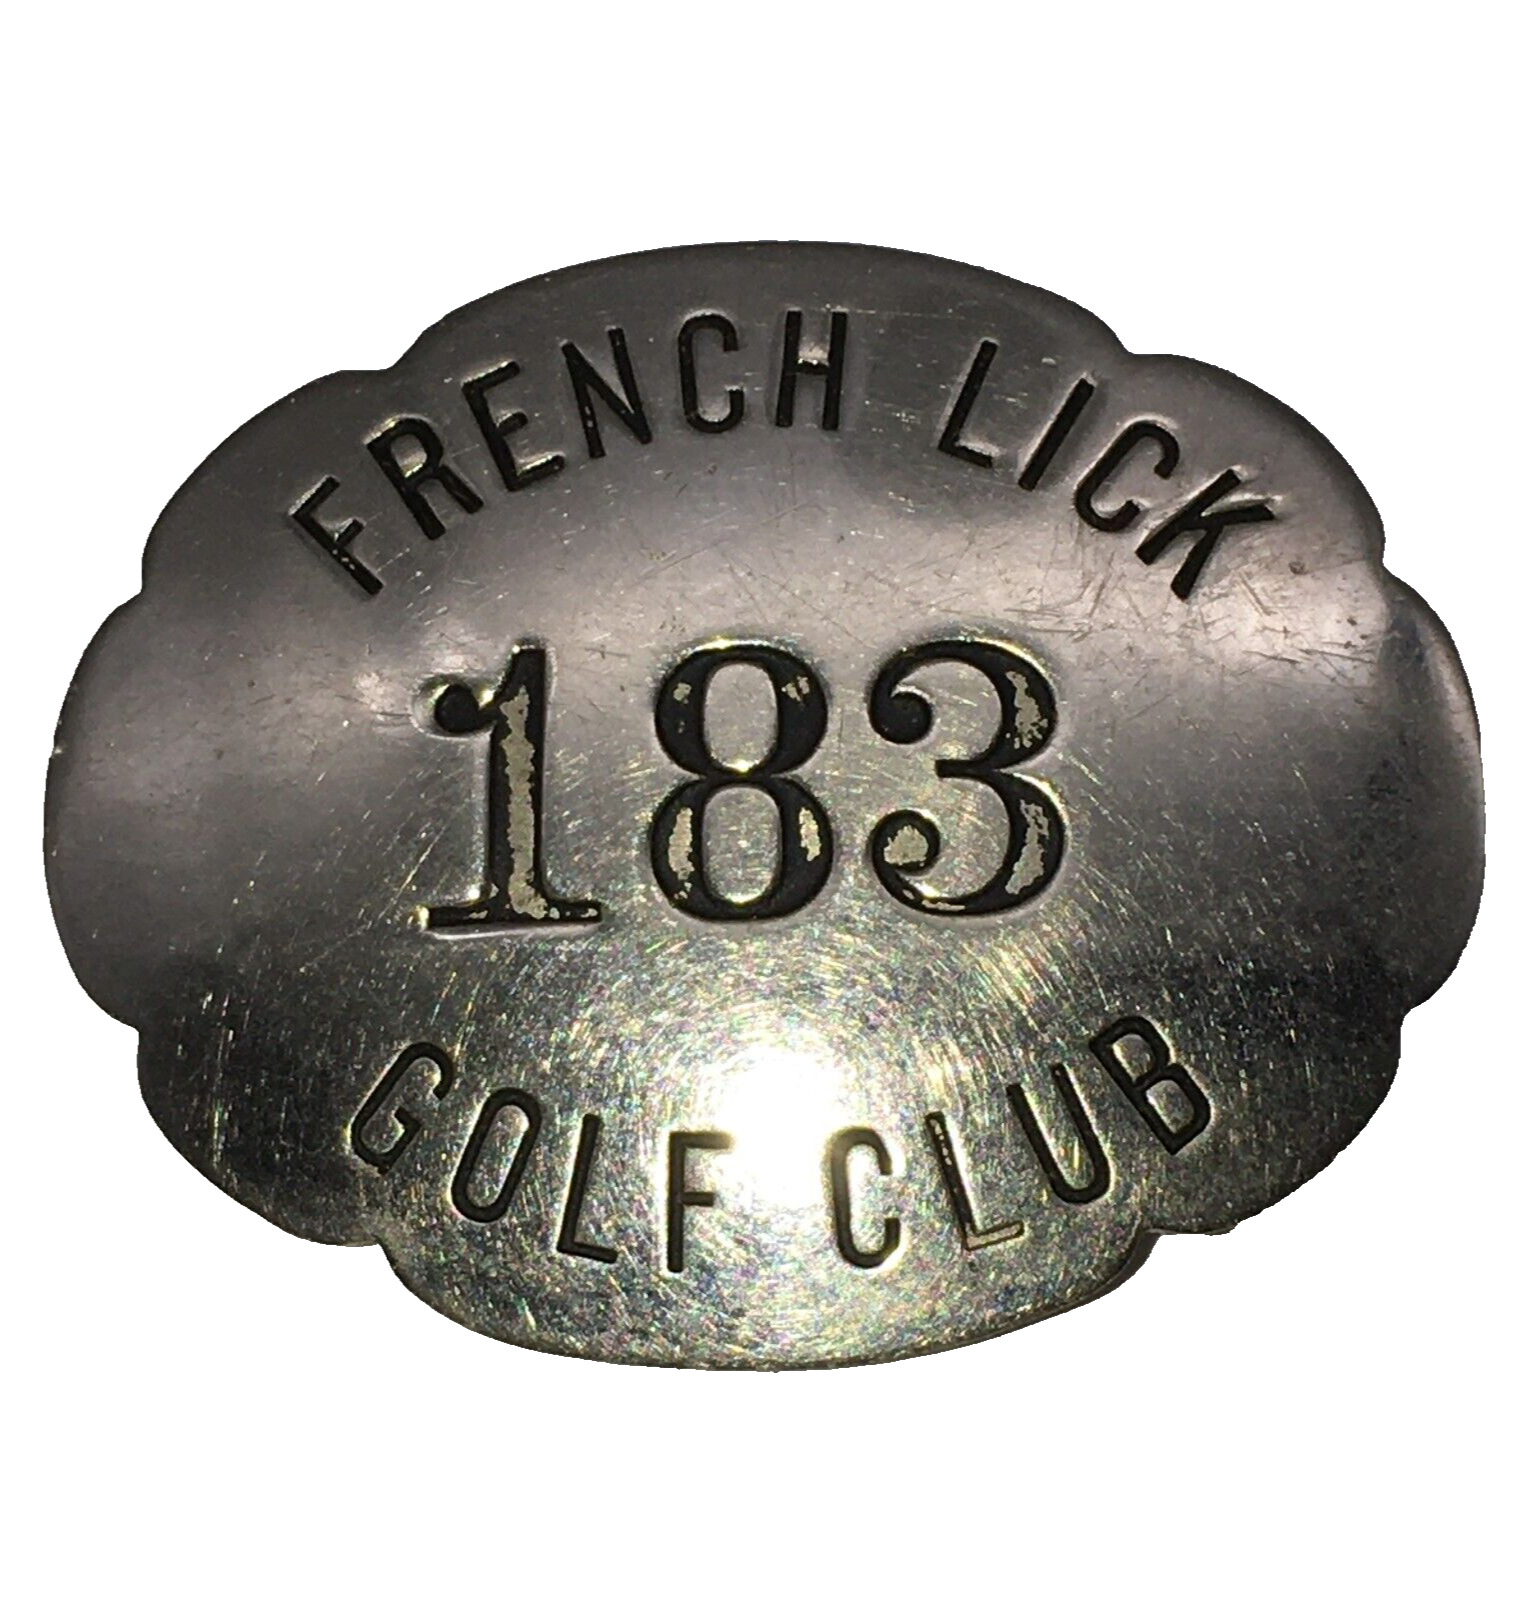 French Lick Golf Club 1 3/8” x 1 5/8” golf caddie or waiters badge